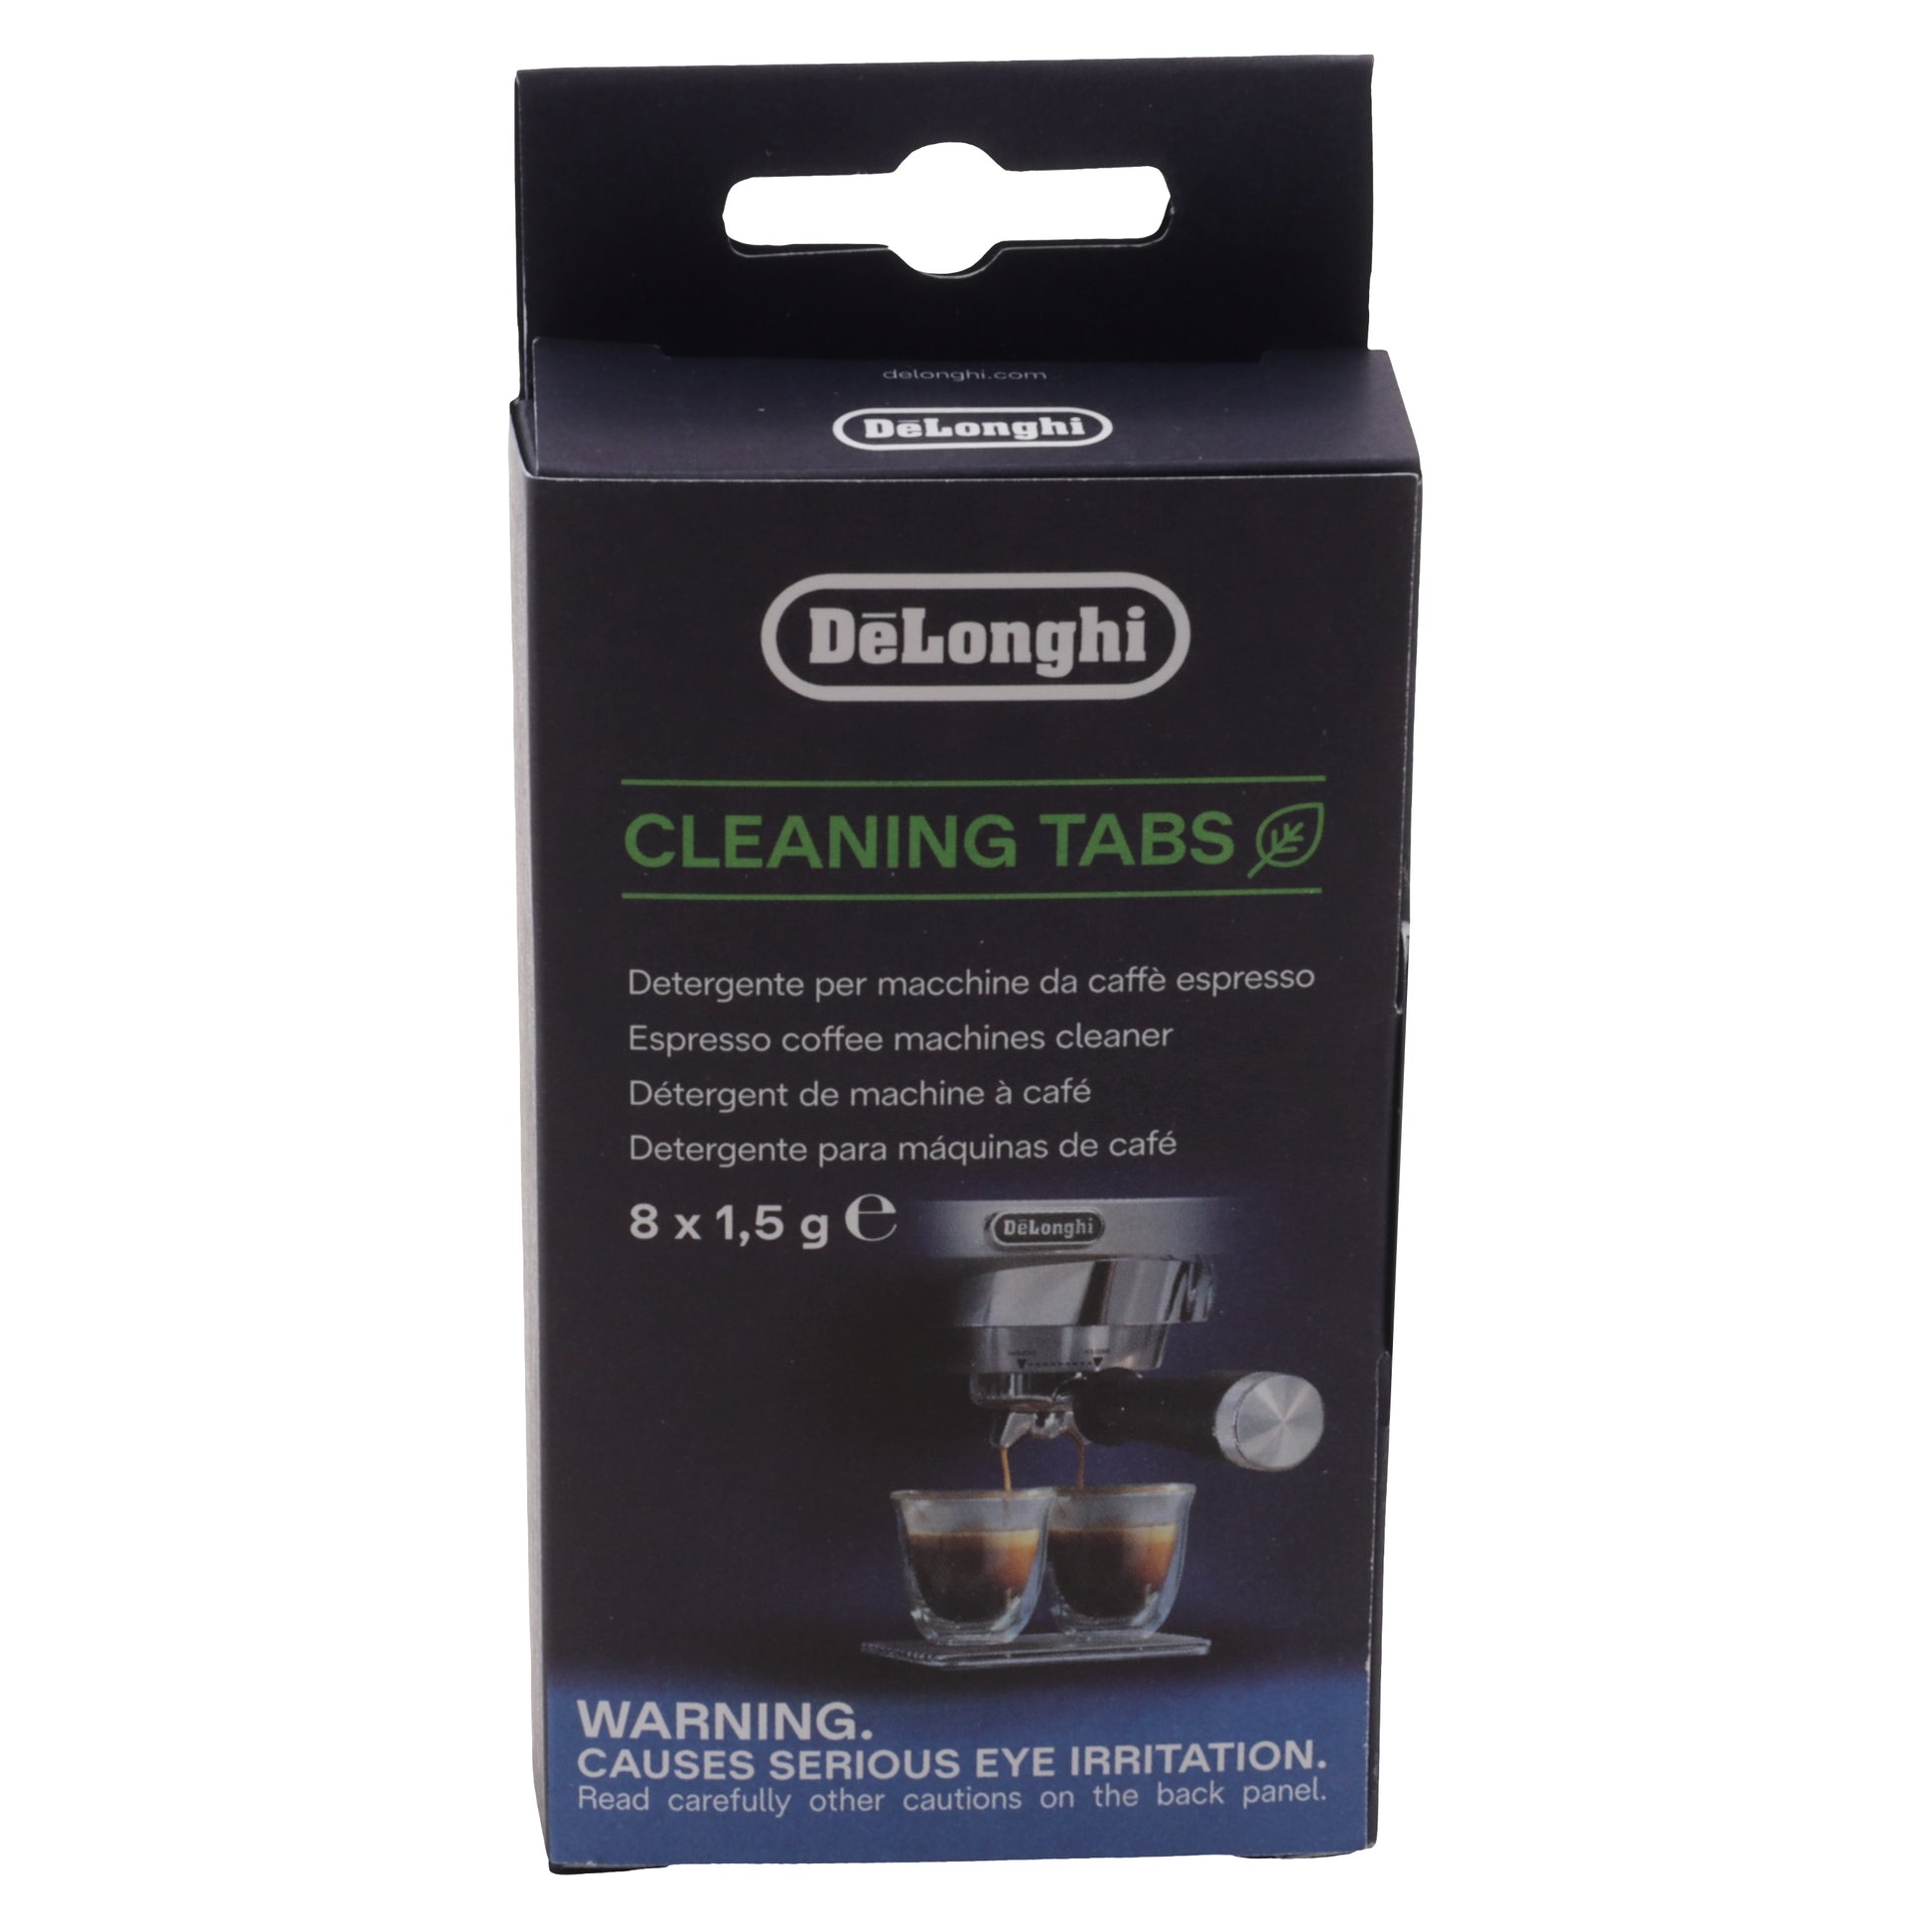 Delonghi Cleaning Tabs pastiglie detergenti filtro macchina caffè Specialista